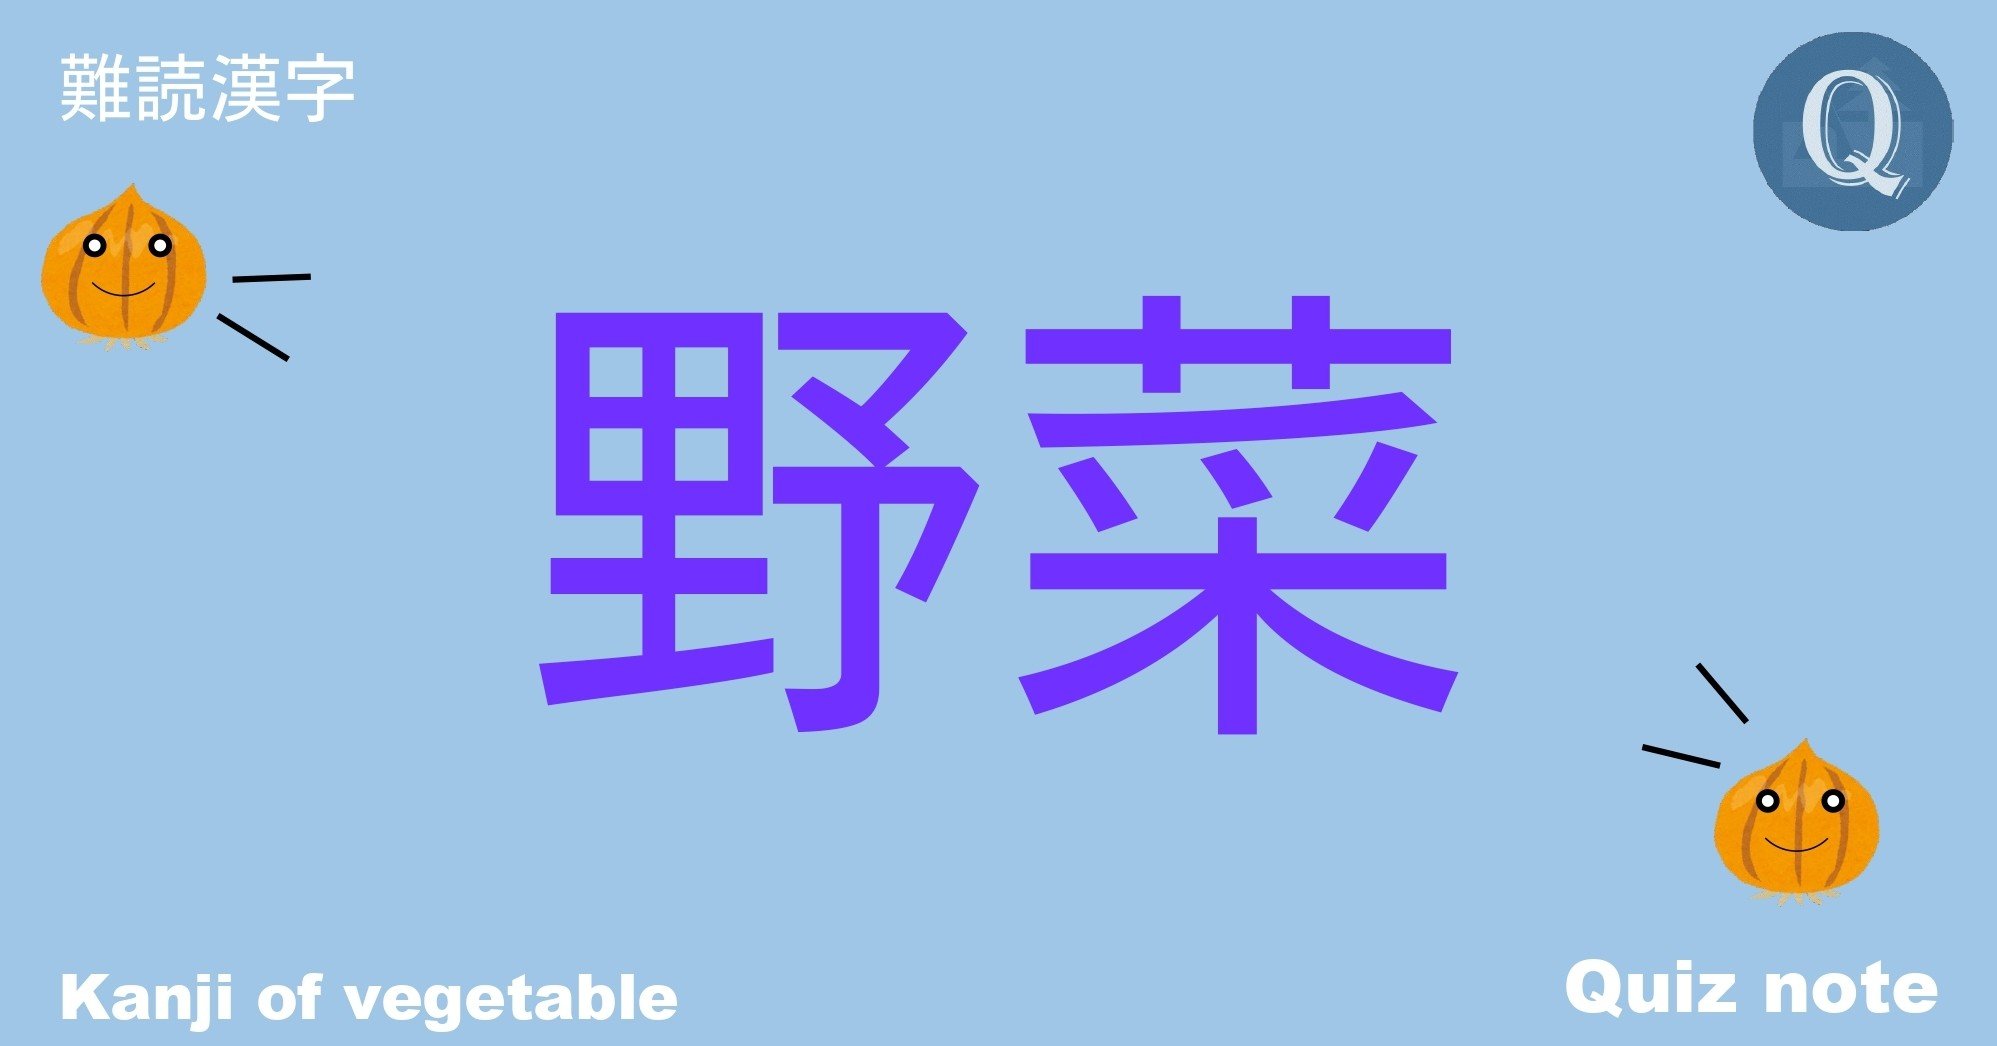 クイズ 野菜の漢字読めますか 難読漢字 Quiz Note Note